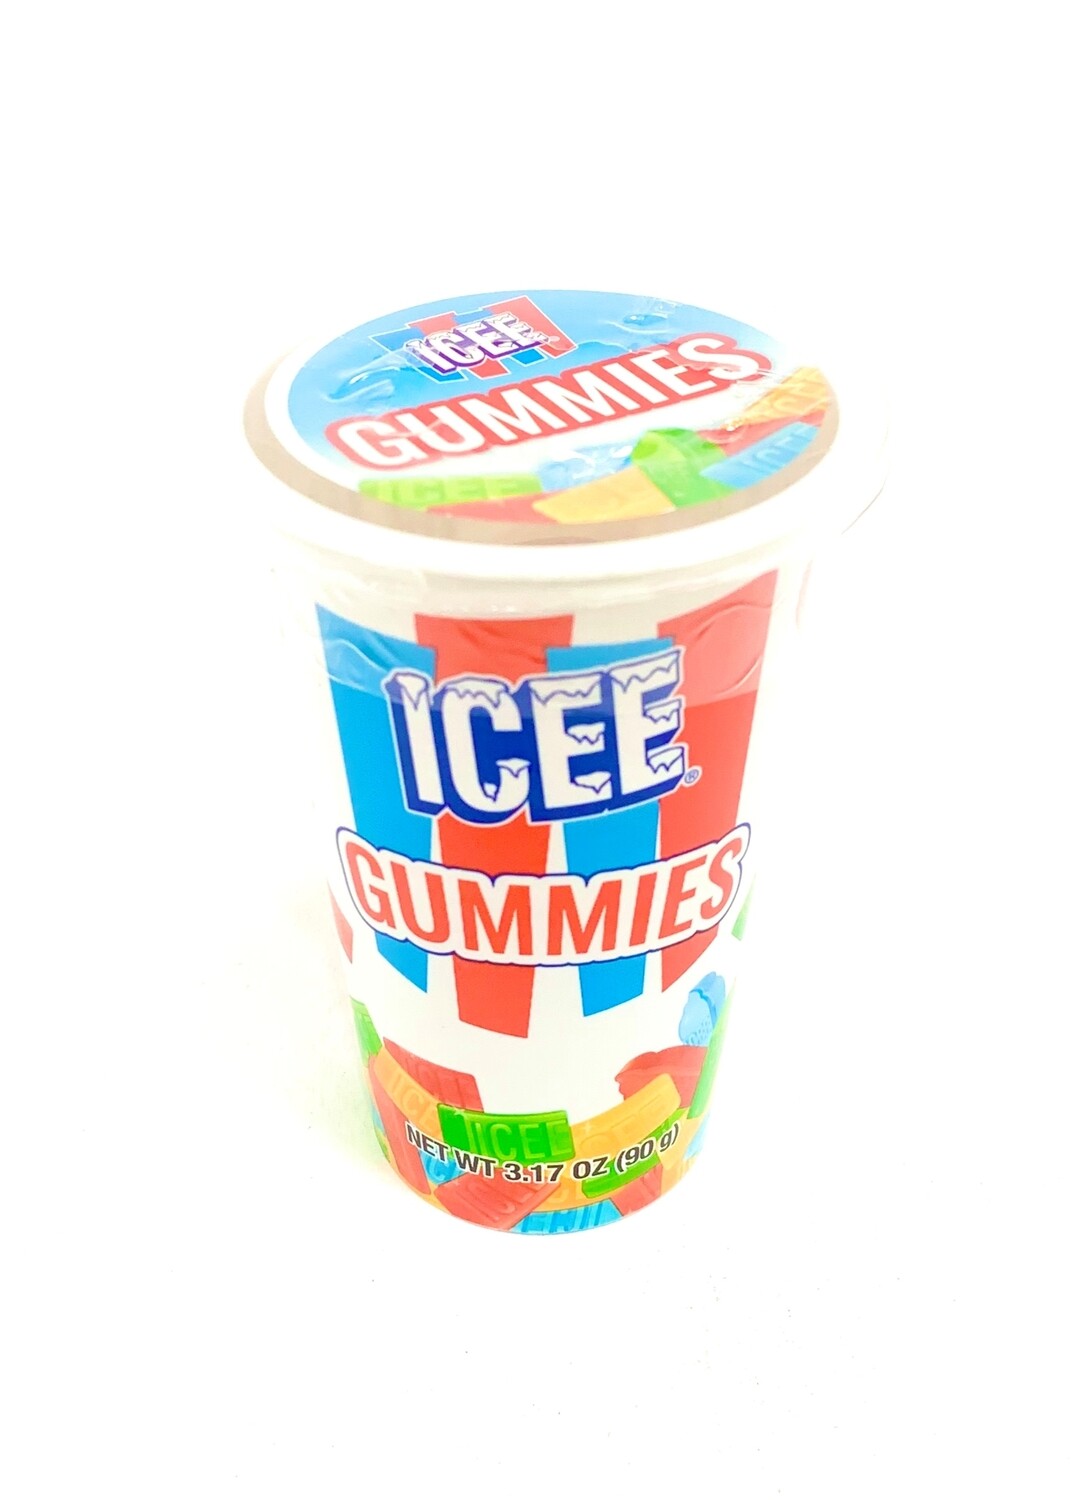 Icee Gummies 3.17oz